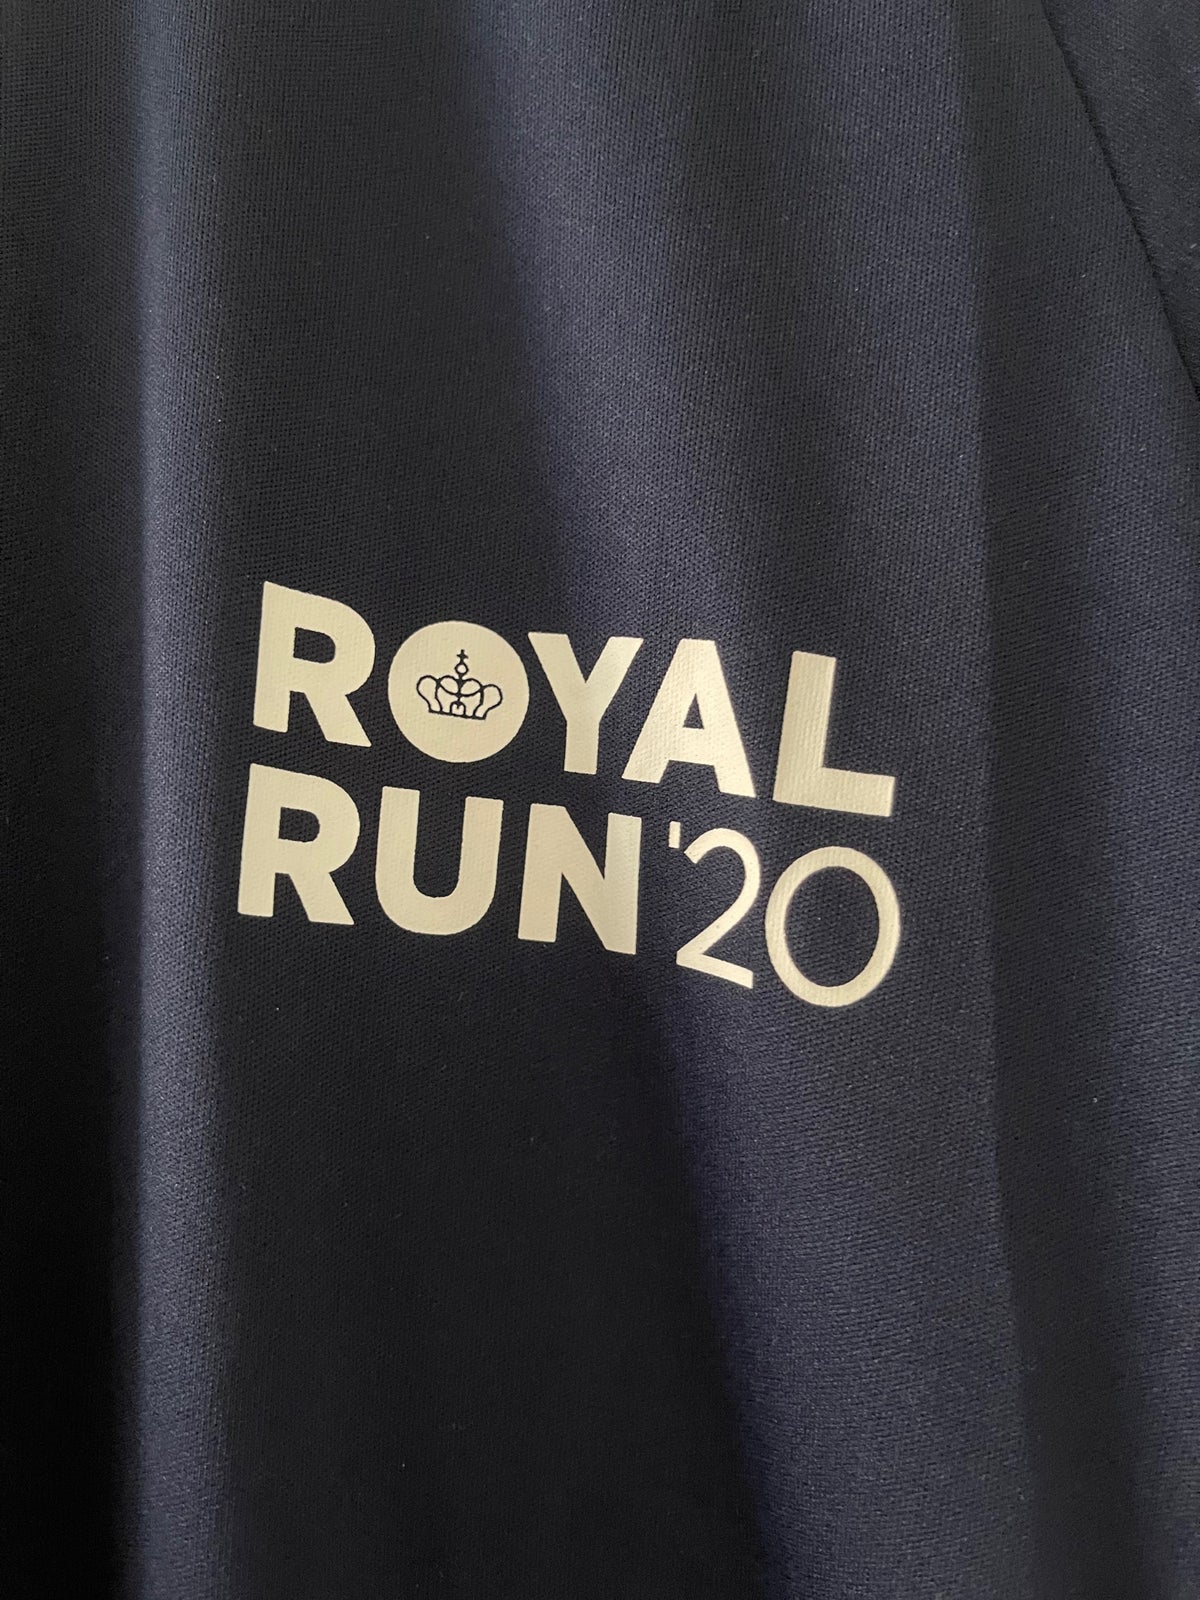 Samarbejdsvillig Udlevering hule T-shirt, Royal Run, str. 38 – dba.dk – Køb og Salg af Nyt og Brugt